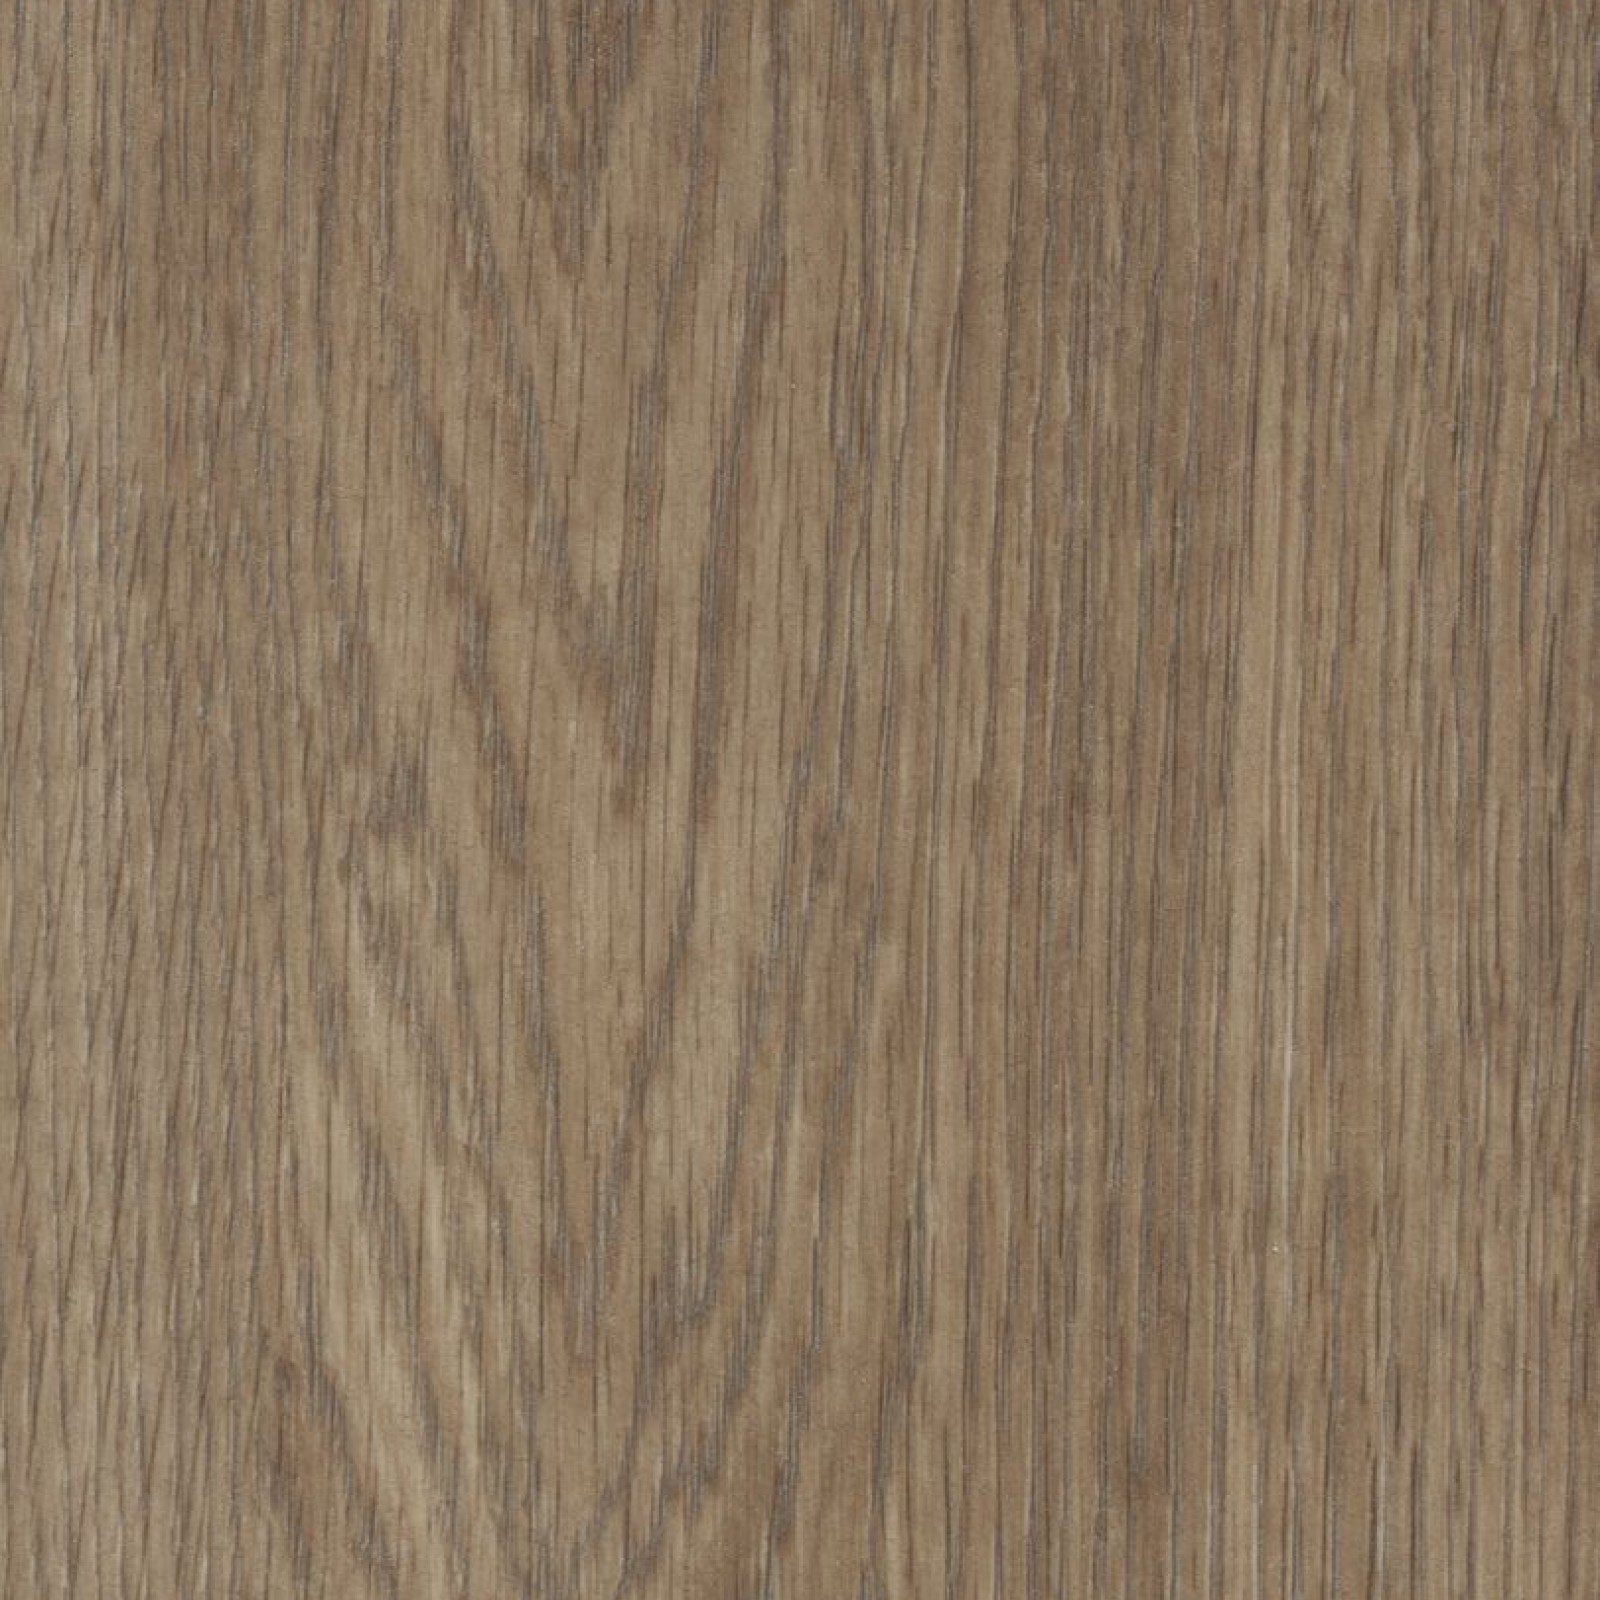 Vzor - 60374FL1 natural collage oak